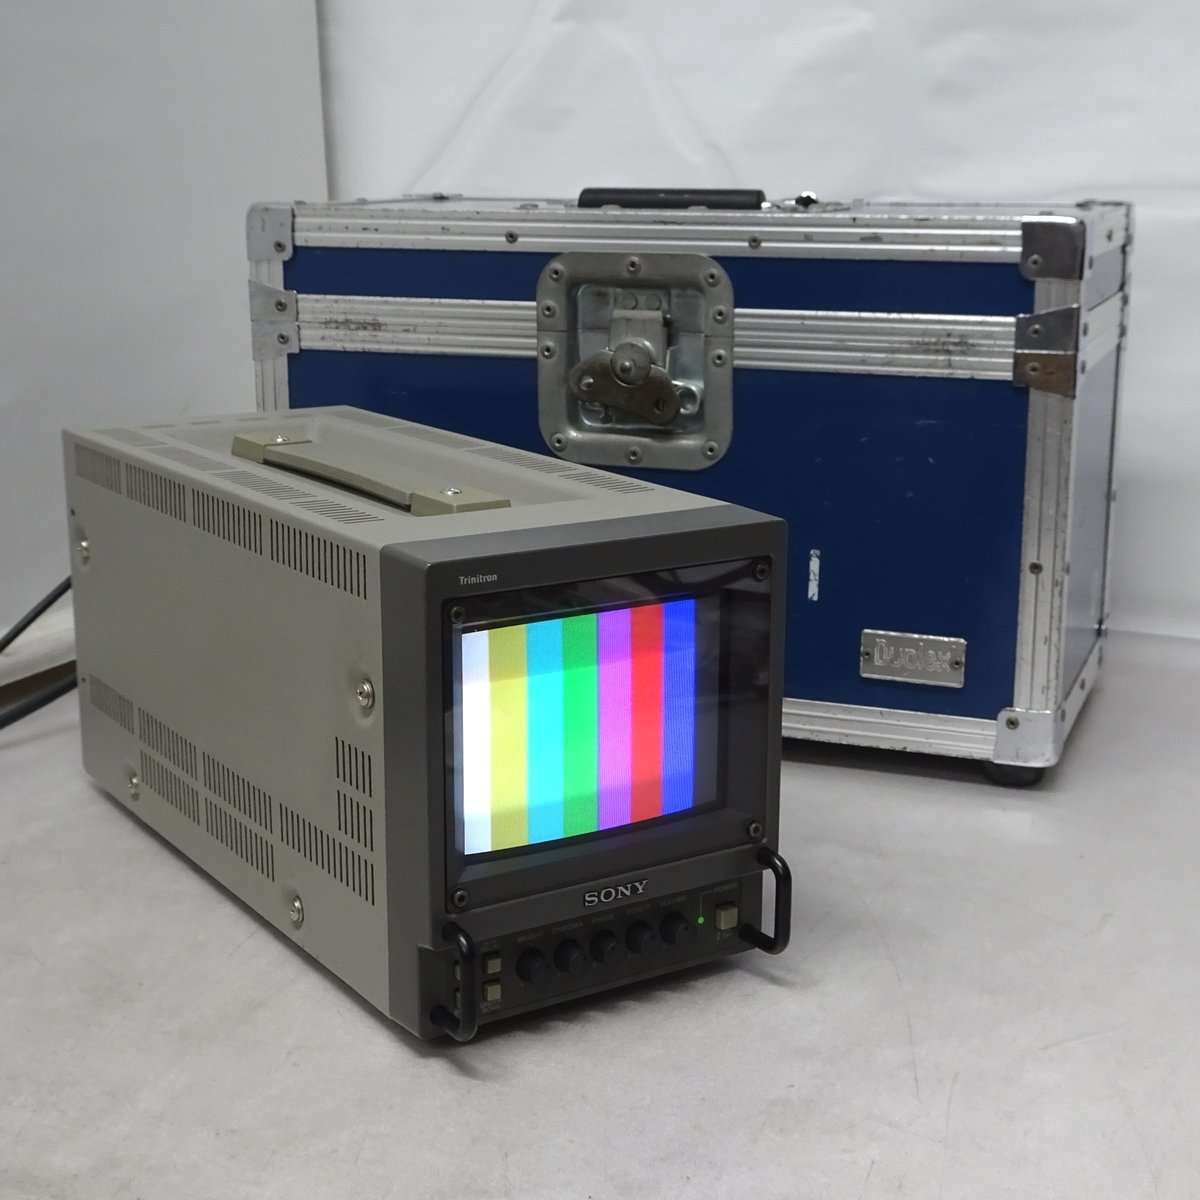 SONY PVM-6041Q 6型トリニトロンカラービデオモニター 【/焼け無し